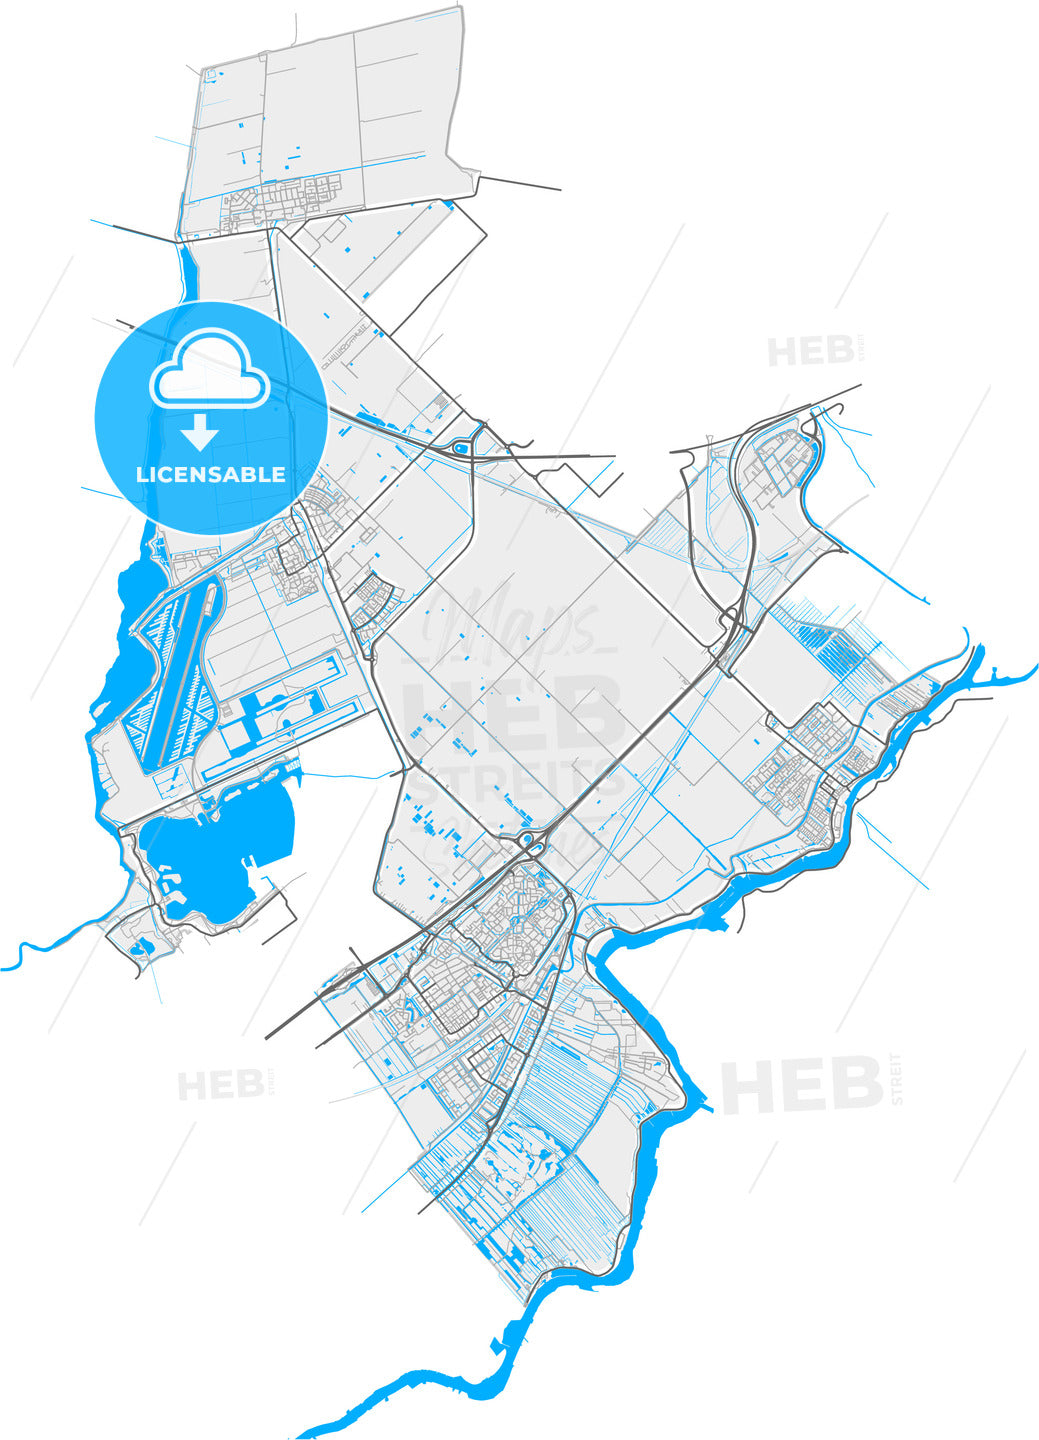 Zuidplas, South Holland, Netherlands, high quality vector map